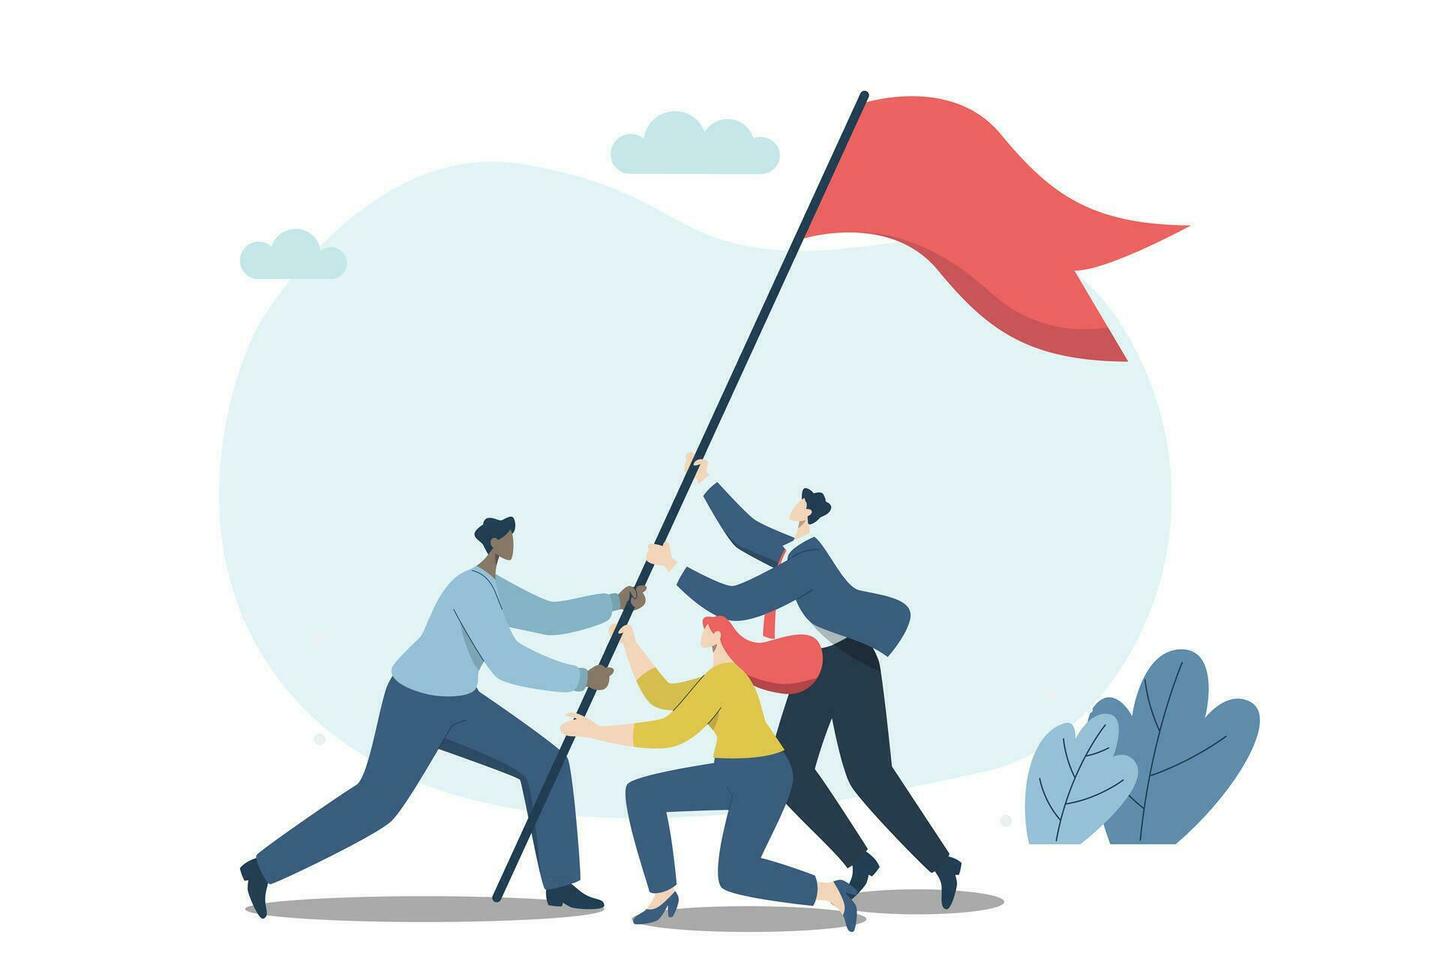 sterk samenspel leidend naar succes voor organisaties, bedrijf mensen werken net zo een team of partners helpen naar verhogen de vlag van zege. vector ontwerp illustratie.